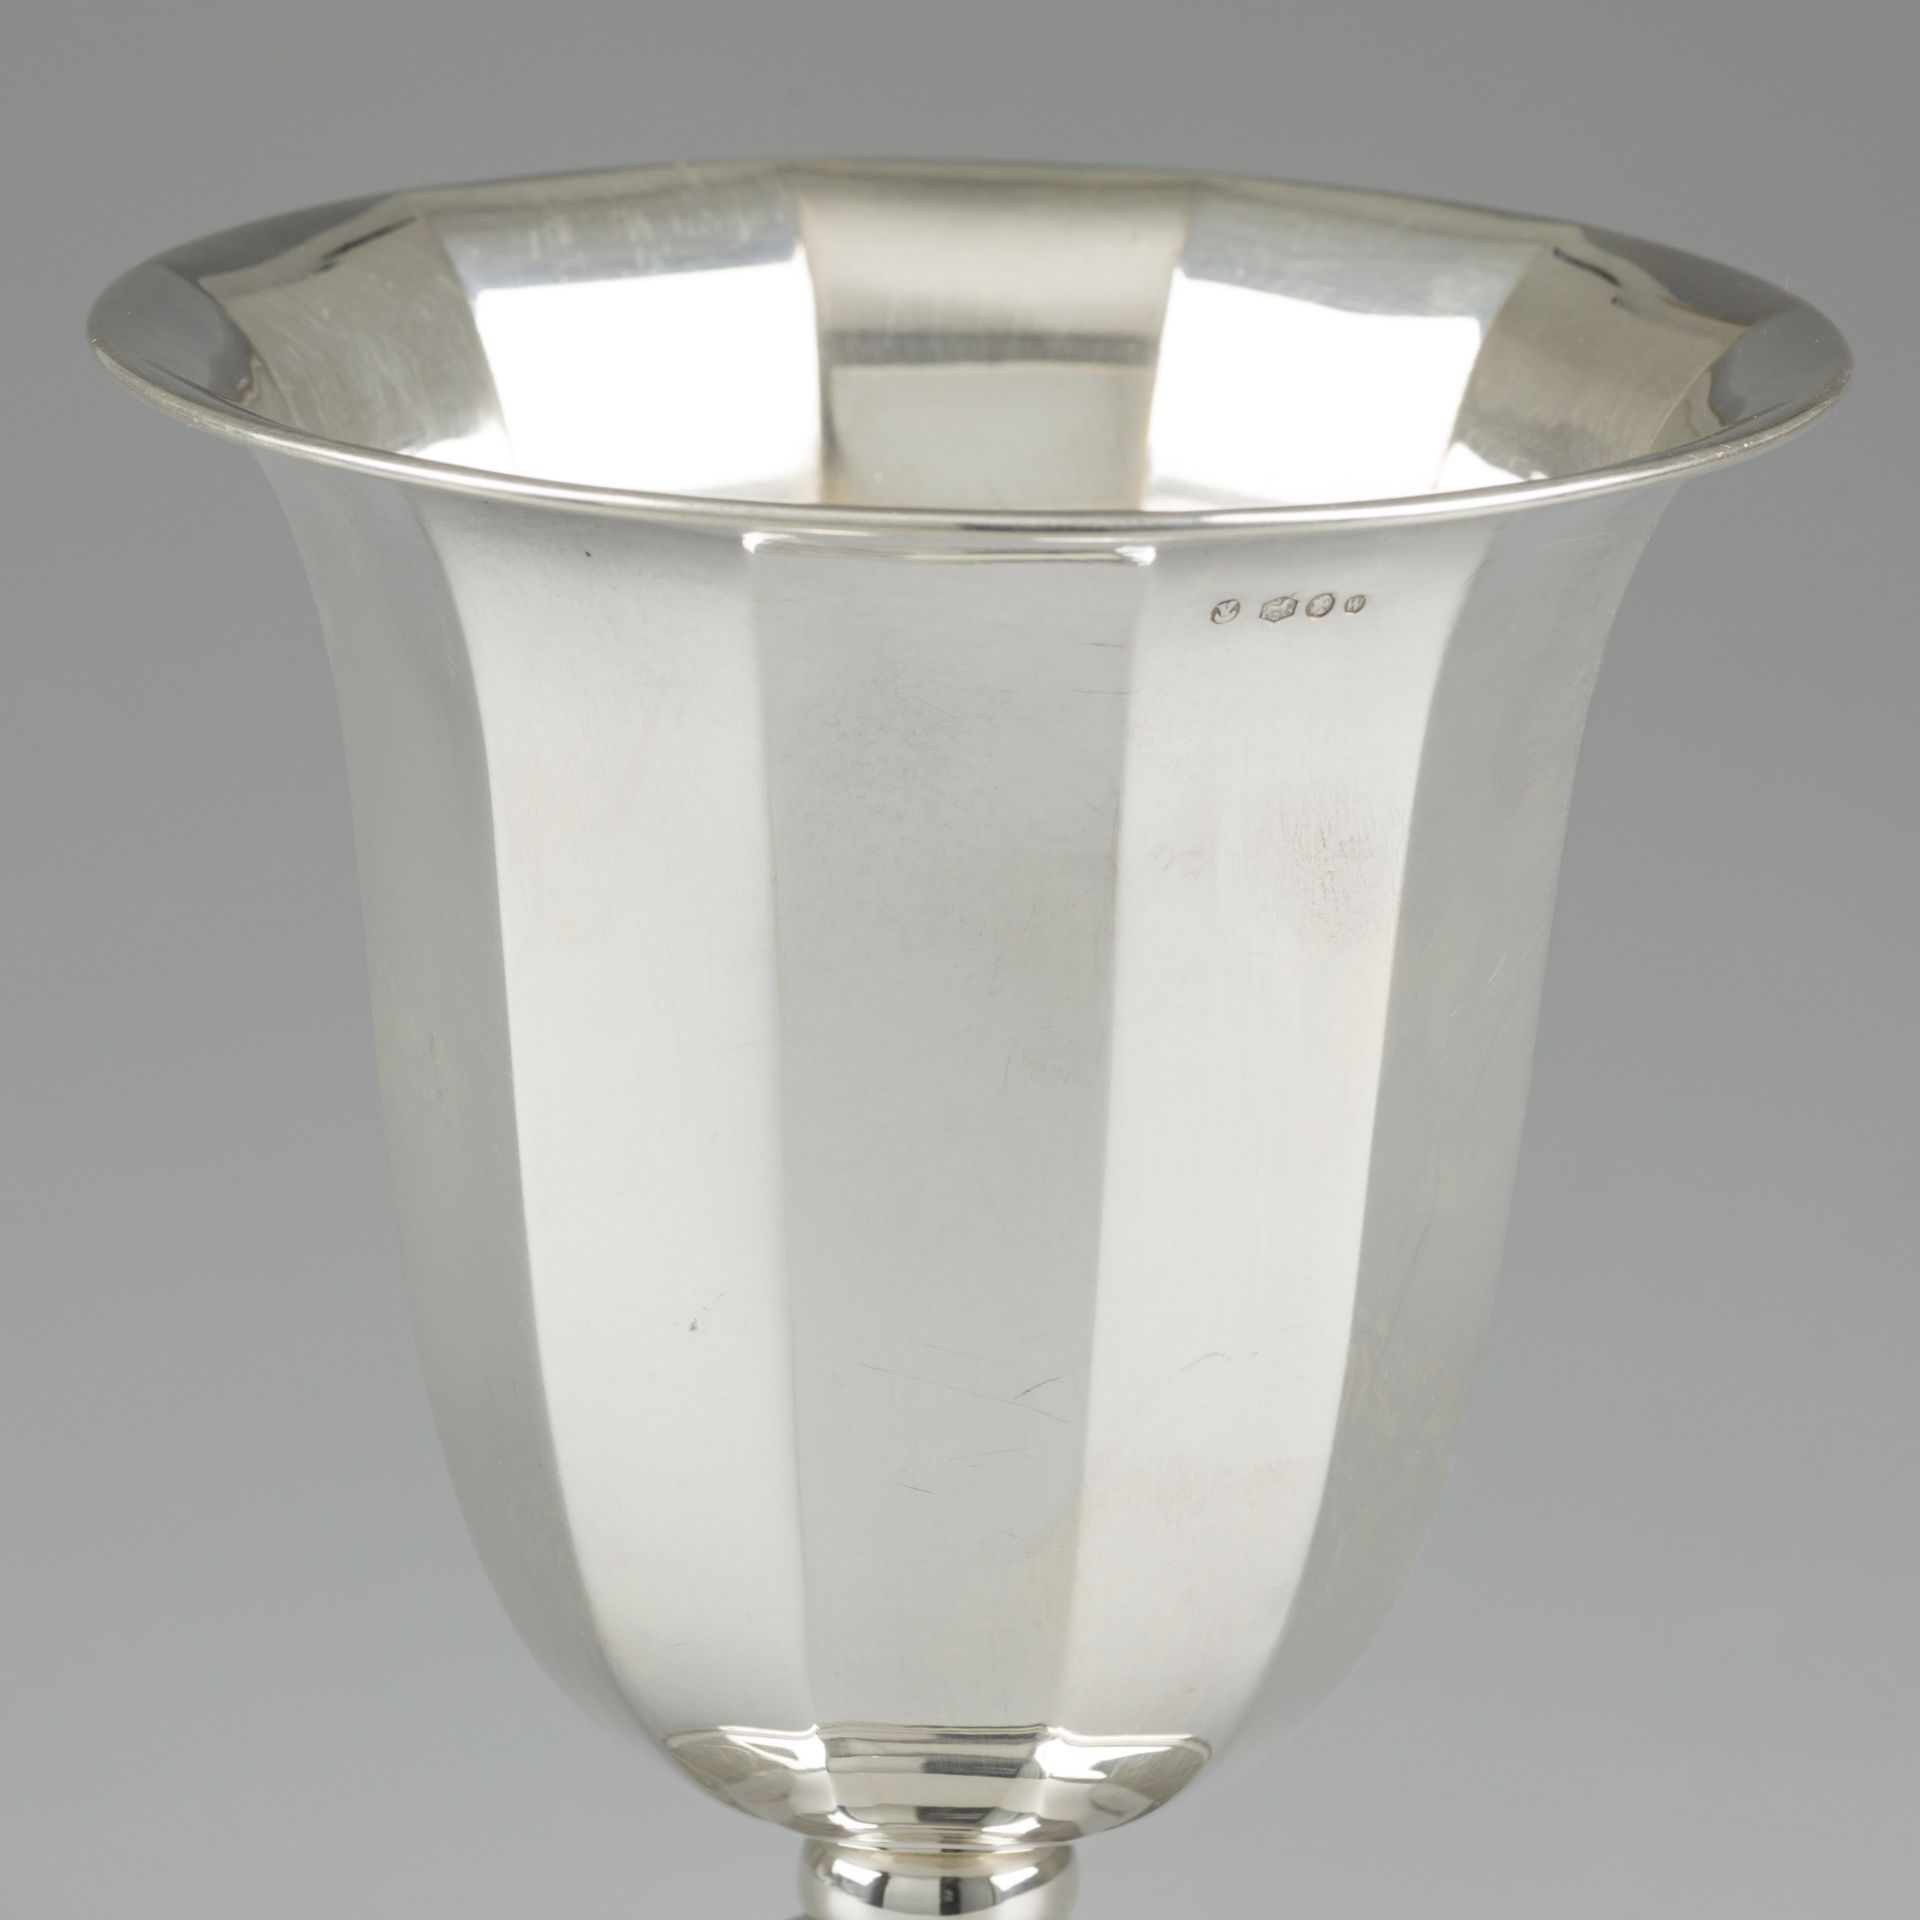 Flower vase silver. - Image 2 of 5